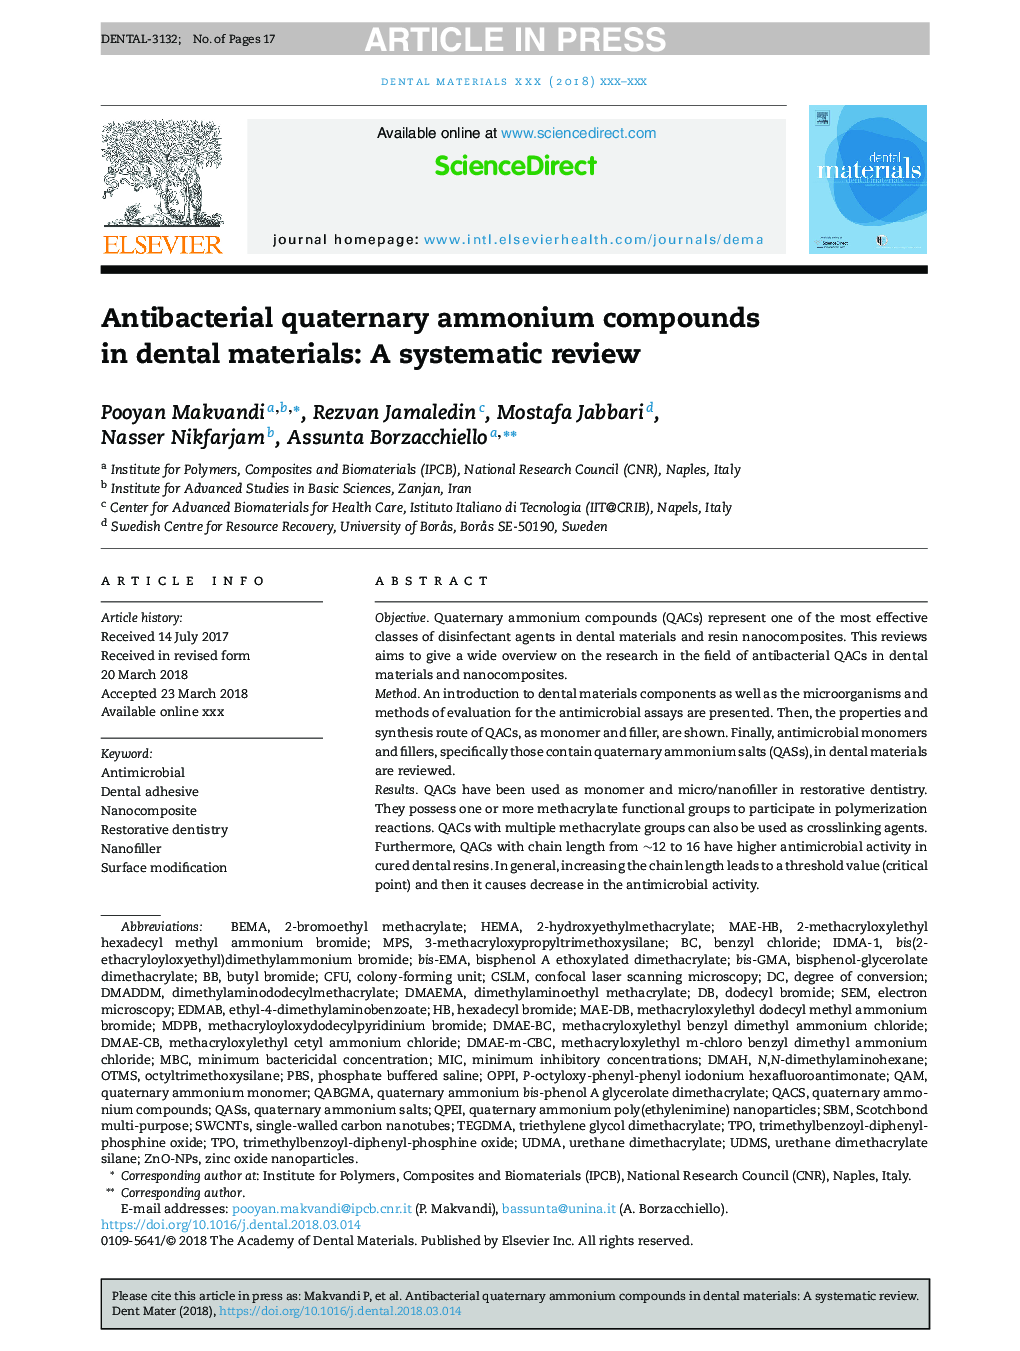 ترکیبات آمونیوم کواترنری در مواد دندانی: یک بررسی سیستماتیک 